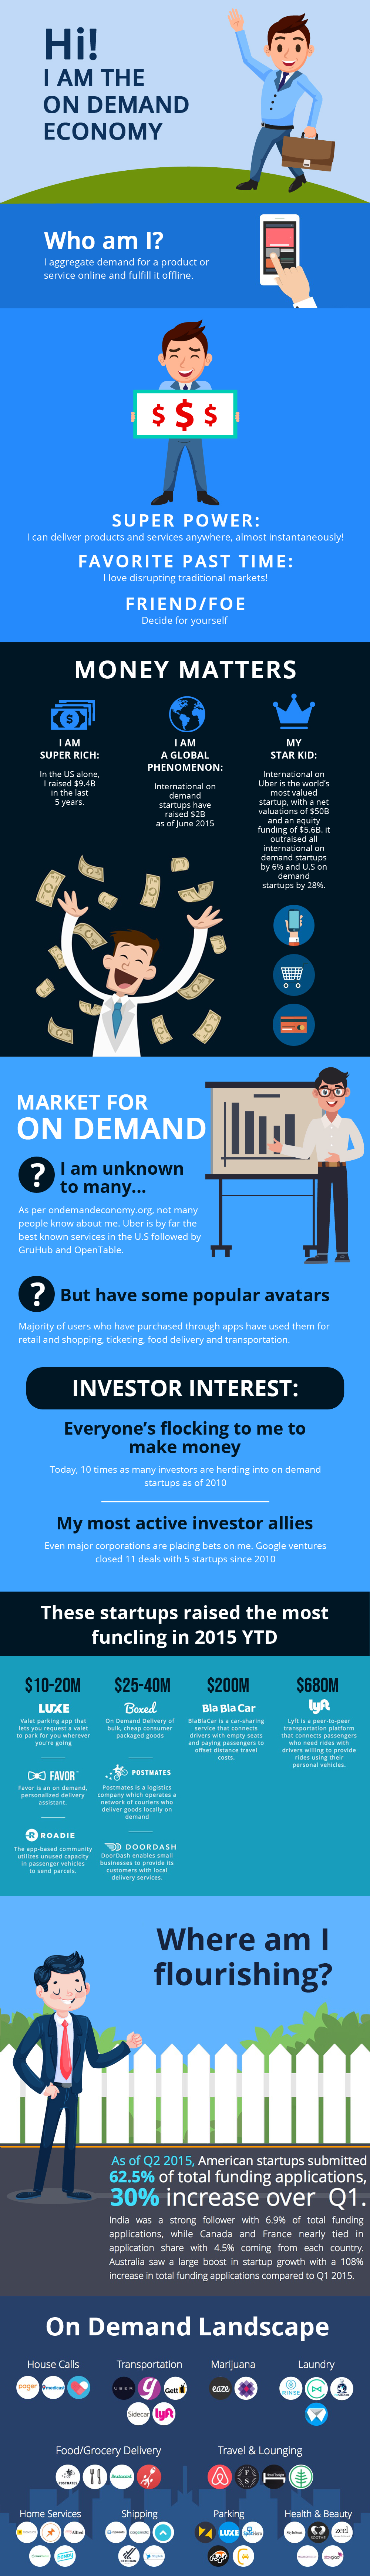 On-Demand economy infographic 